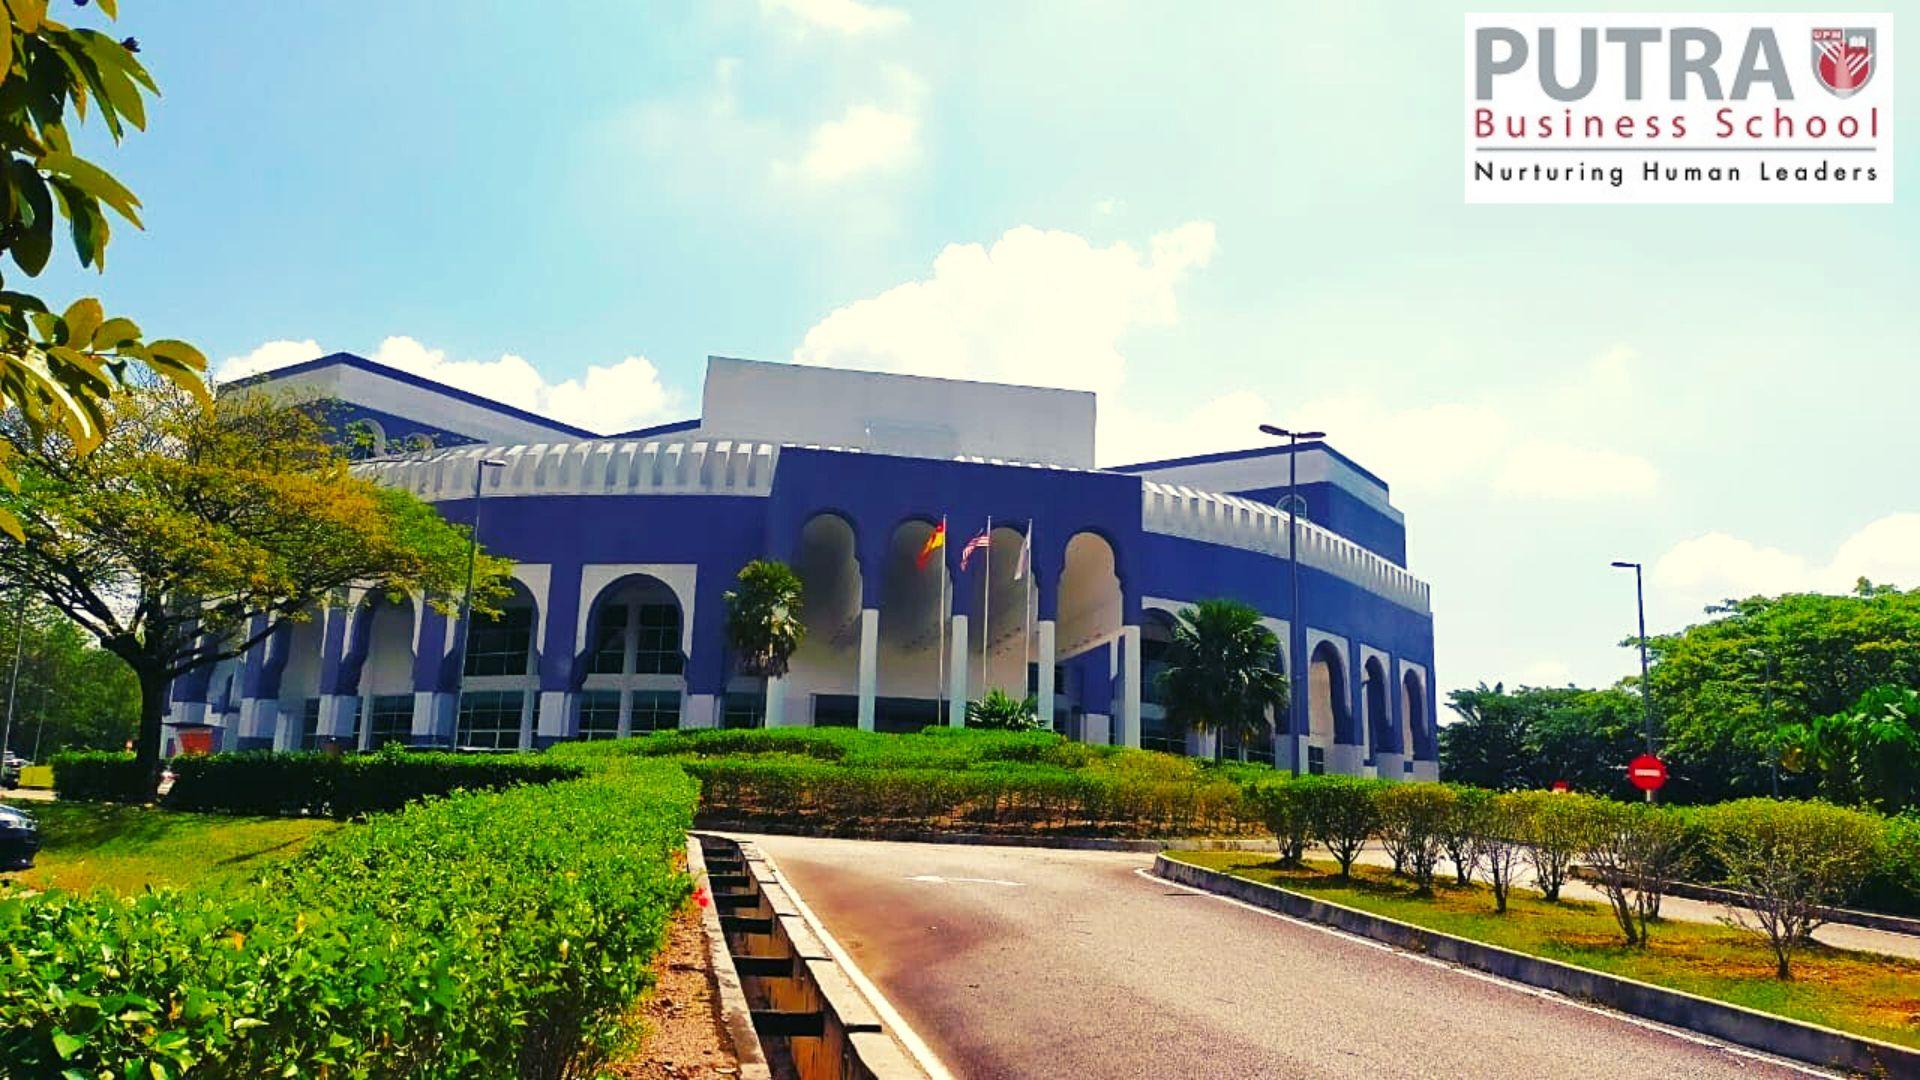 Putra Business School (PBS)